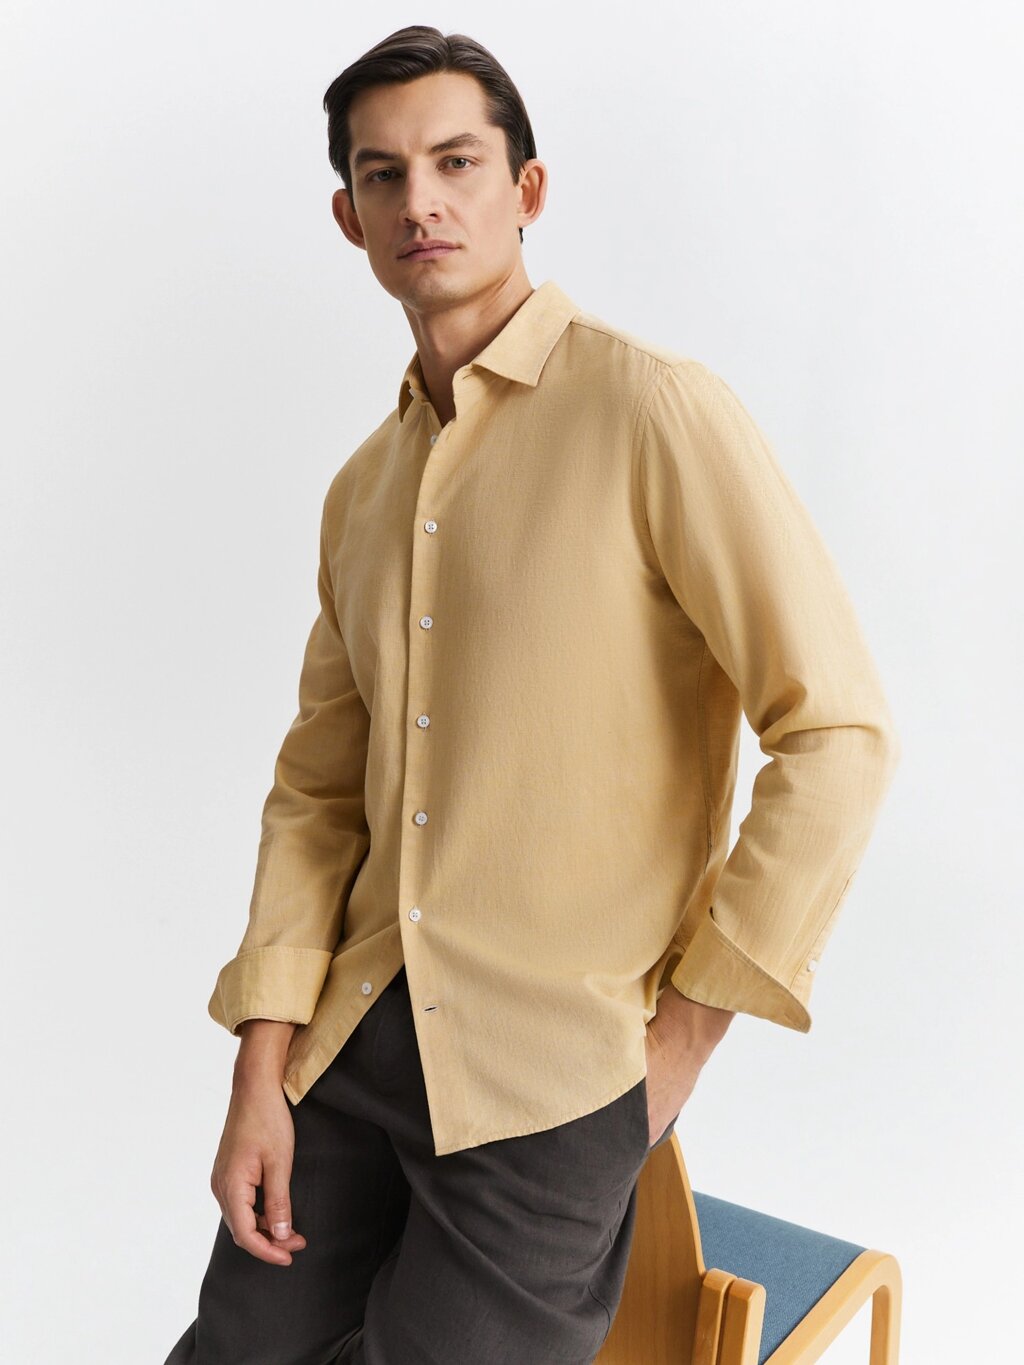 Рубашка из хлопка и льна (48) от компании Admi - фото 1